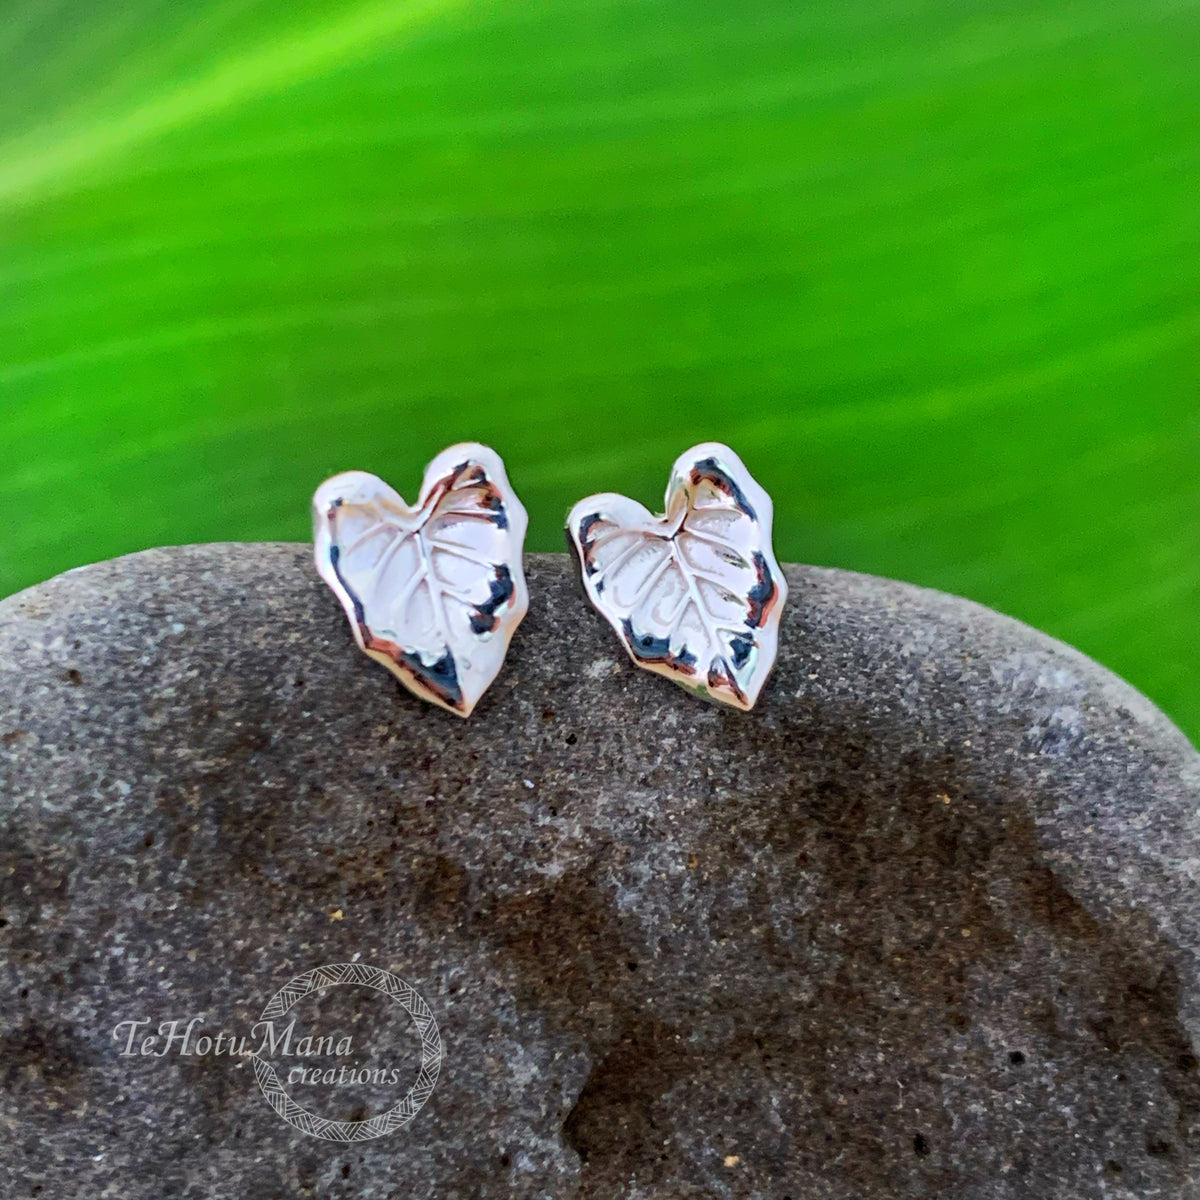 Pop-Up Mākeke - Te Hotu Mana Creations - Kalo Leaf Sterling Silver Stud Earrings